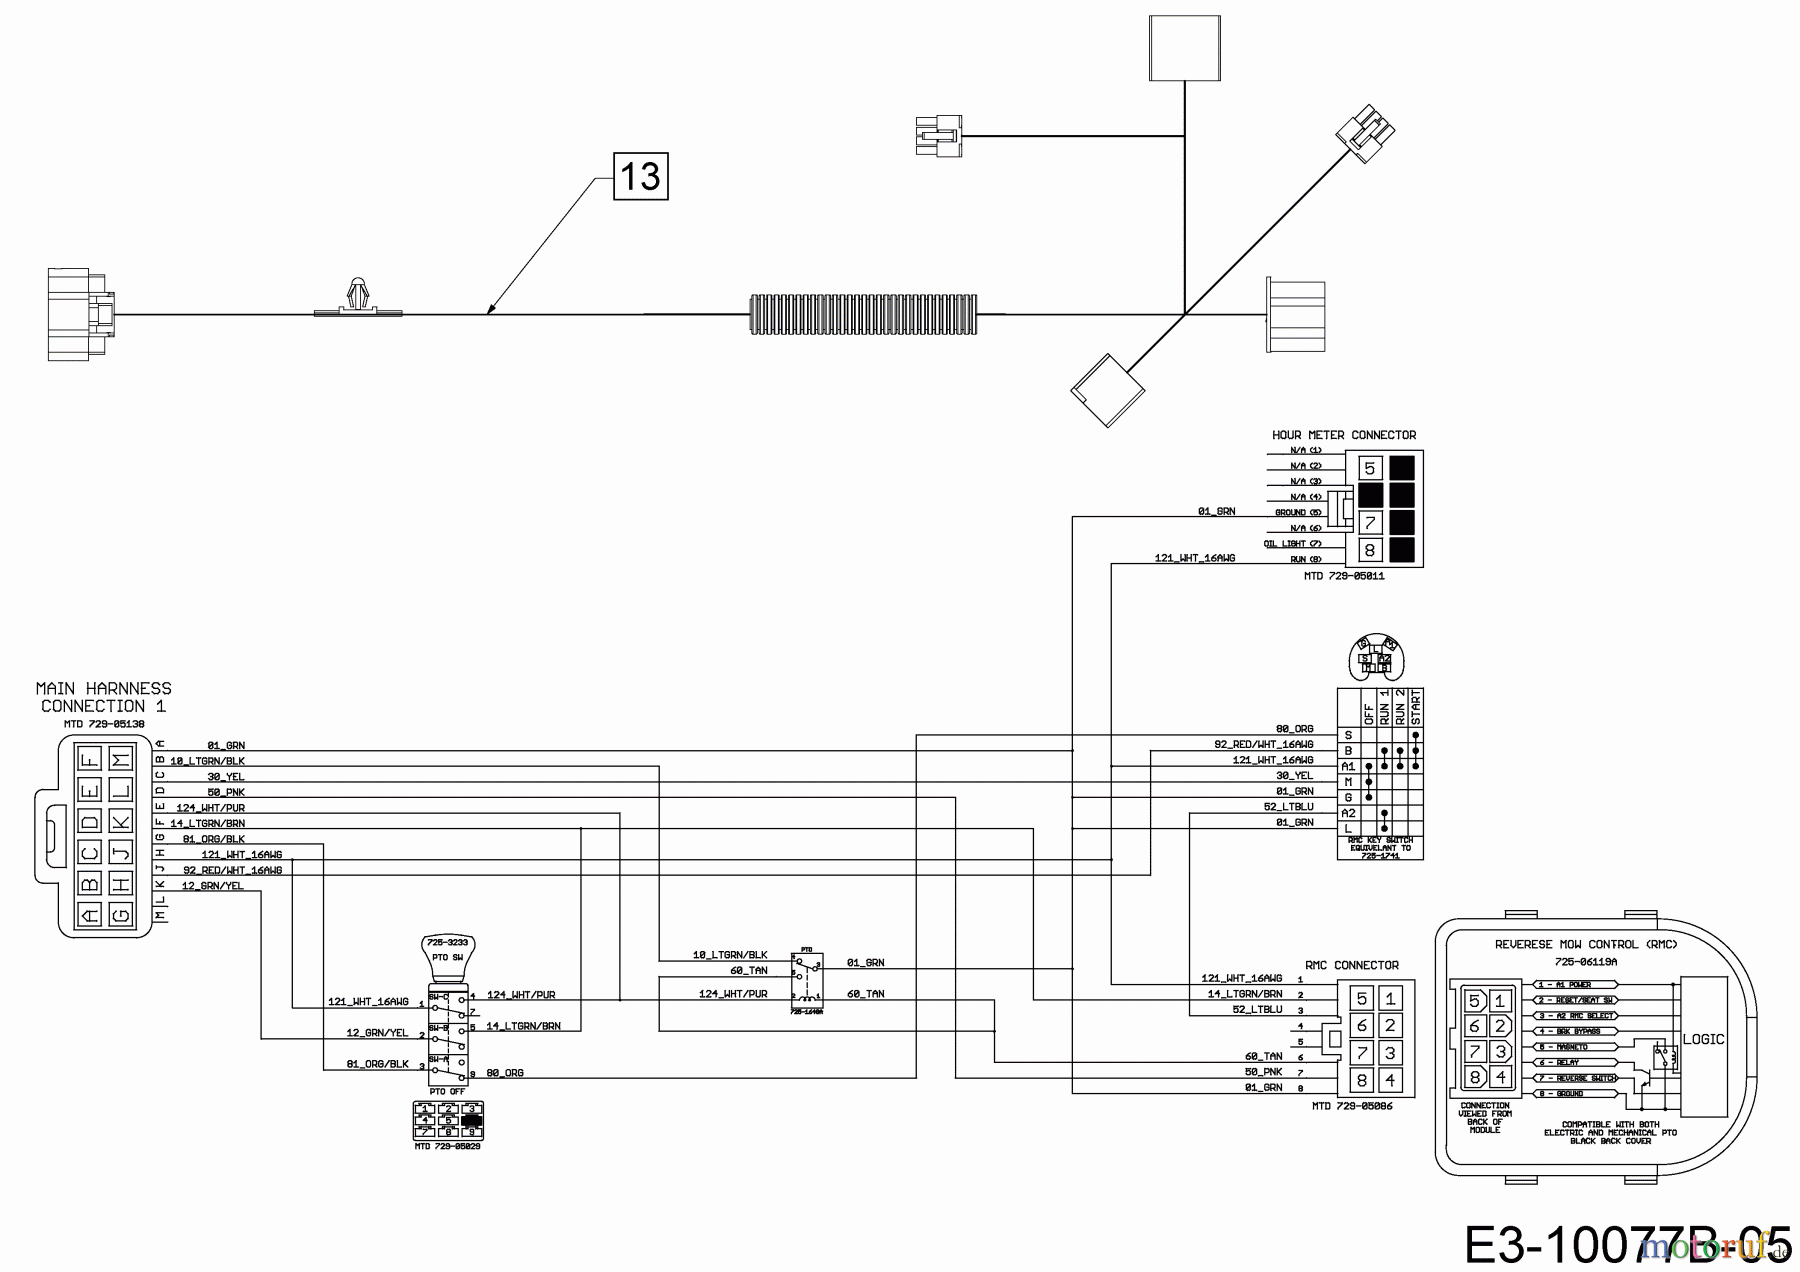  Wolf-Garten Lawn tractors 106.230 H 13AQA1VR350  (2018) Wiring diagram dashboard